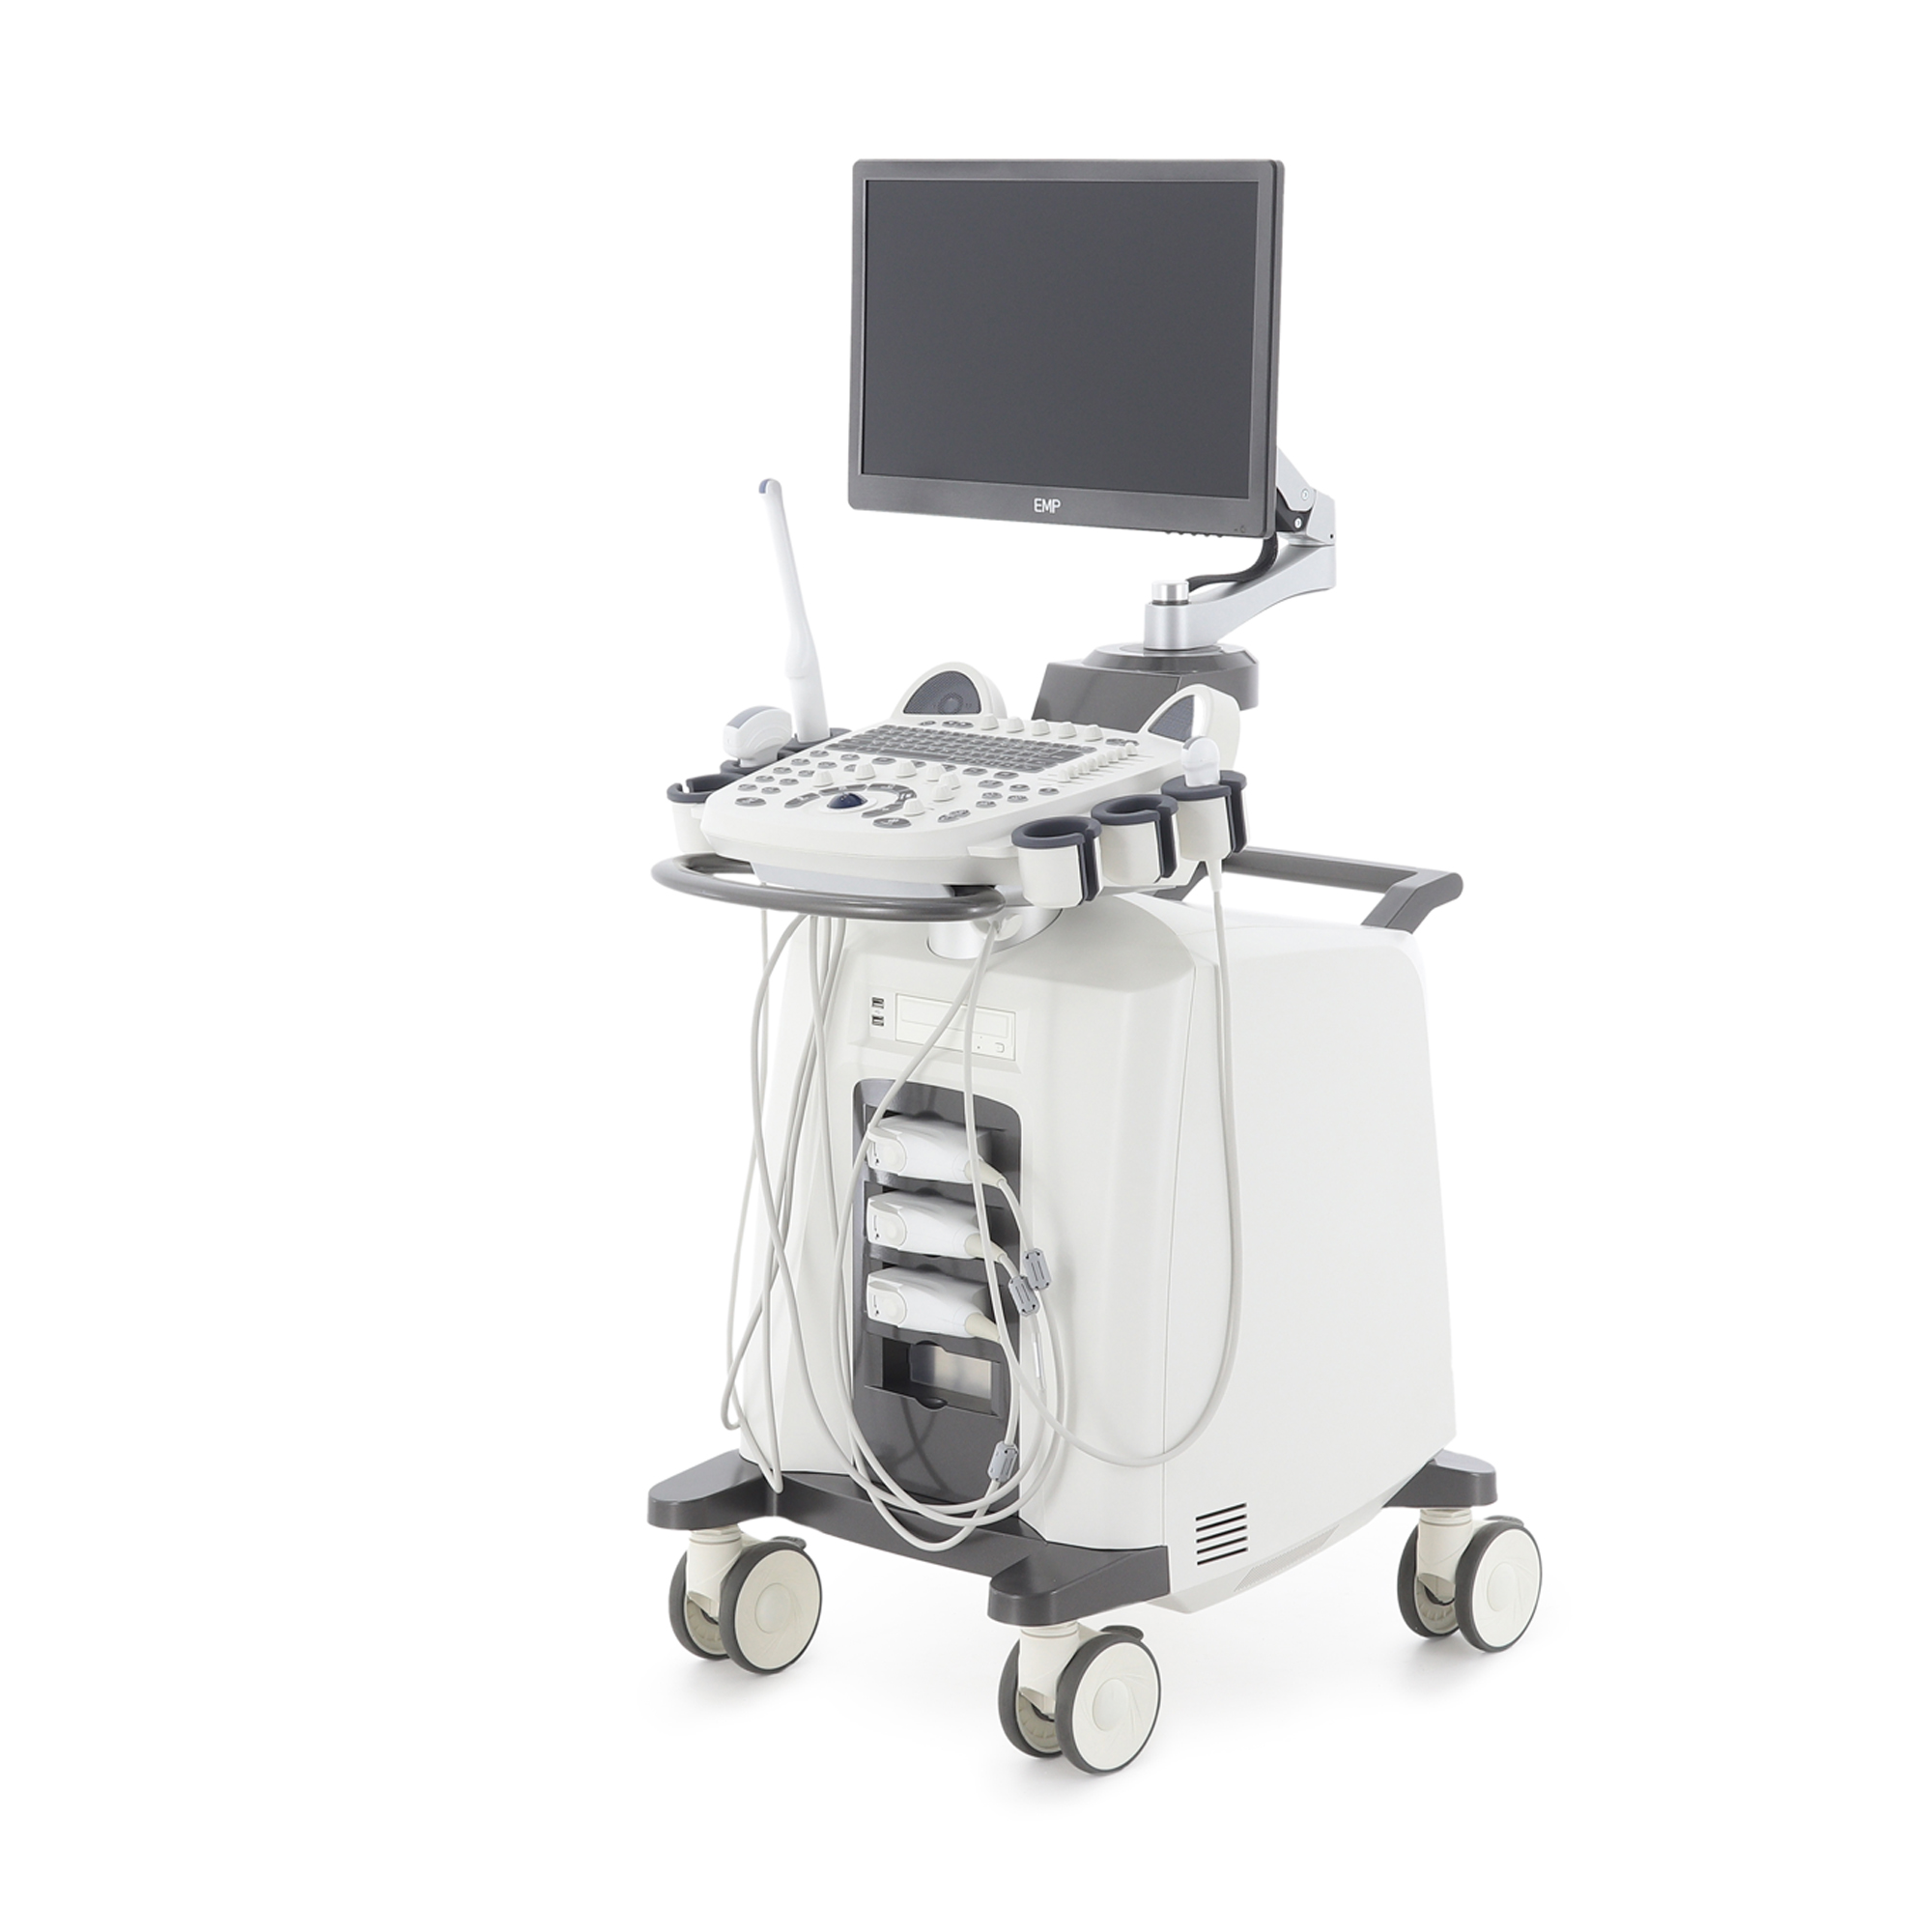 Узи сканер Med-Mos ЕМР3000 с 5-ю датчиками